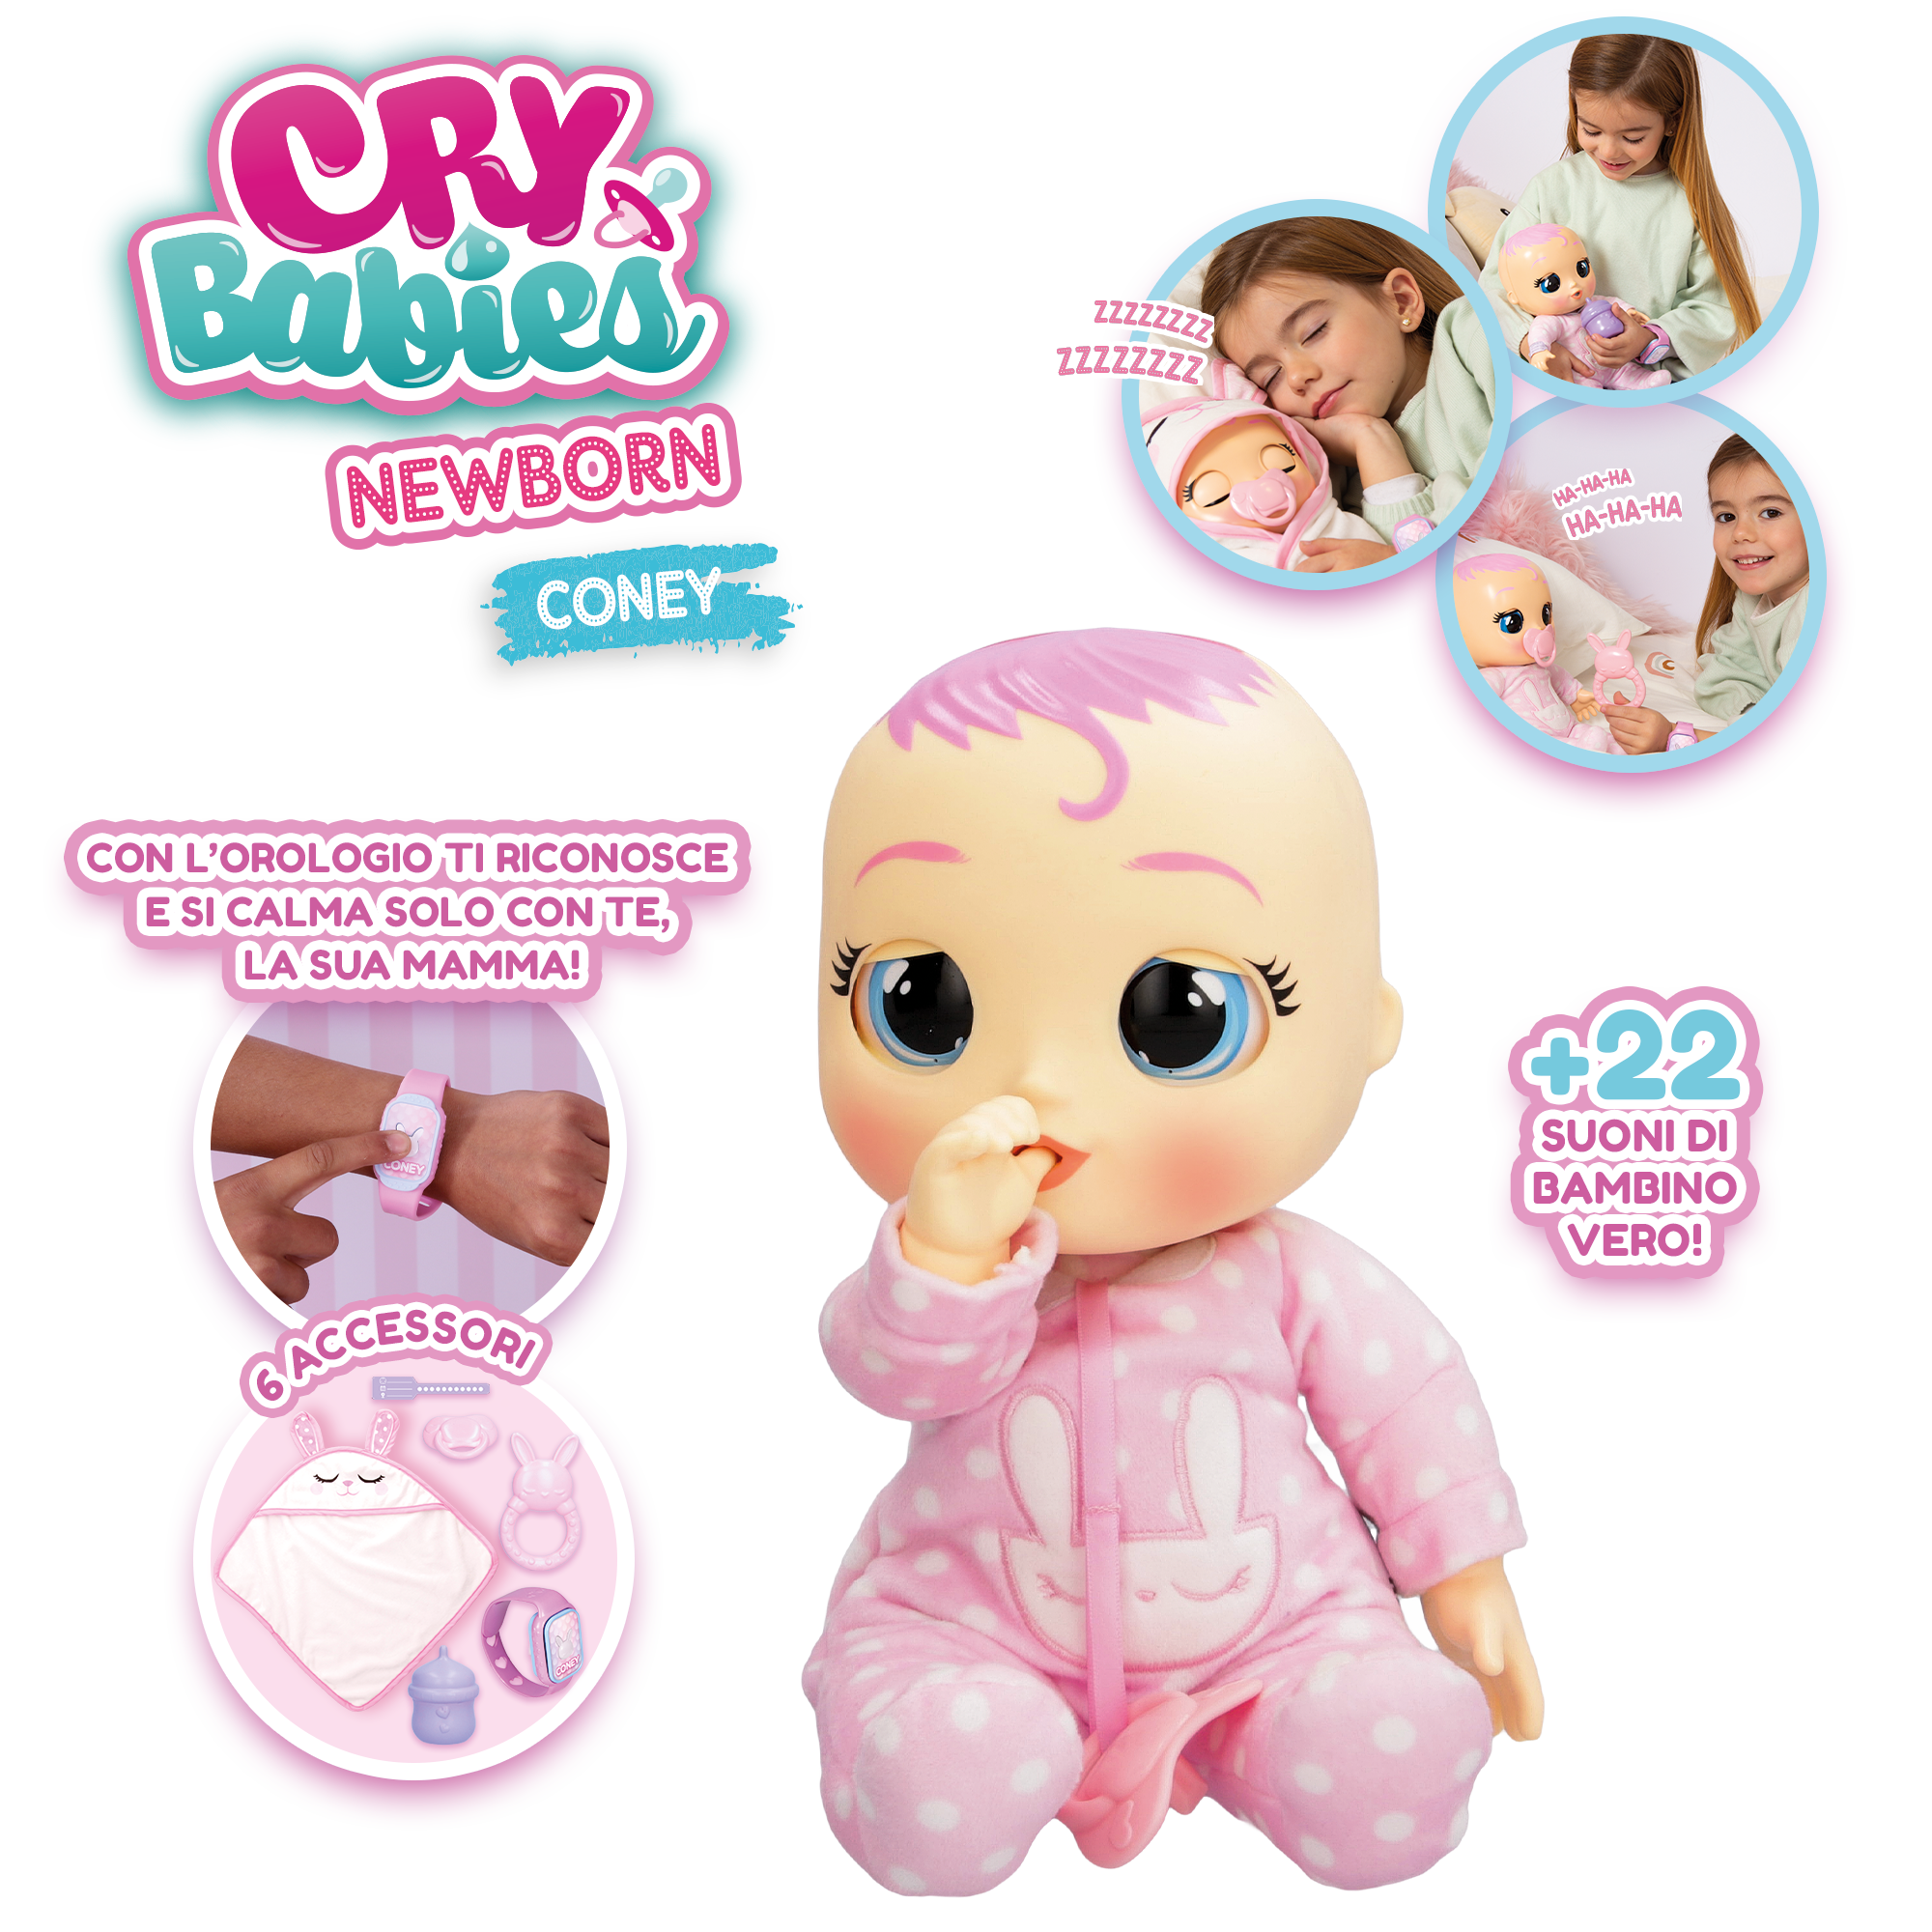 Cry babies newborn coney, bambola interattiva di una vera neonata, mangia,  piange e si calma e ride solo con te, grazie al braccialetto elettronico -  Toys Center